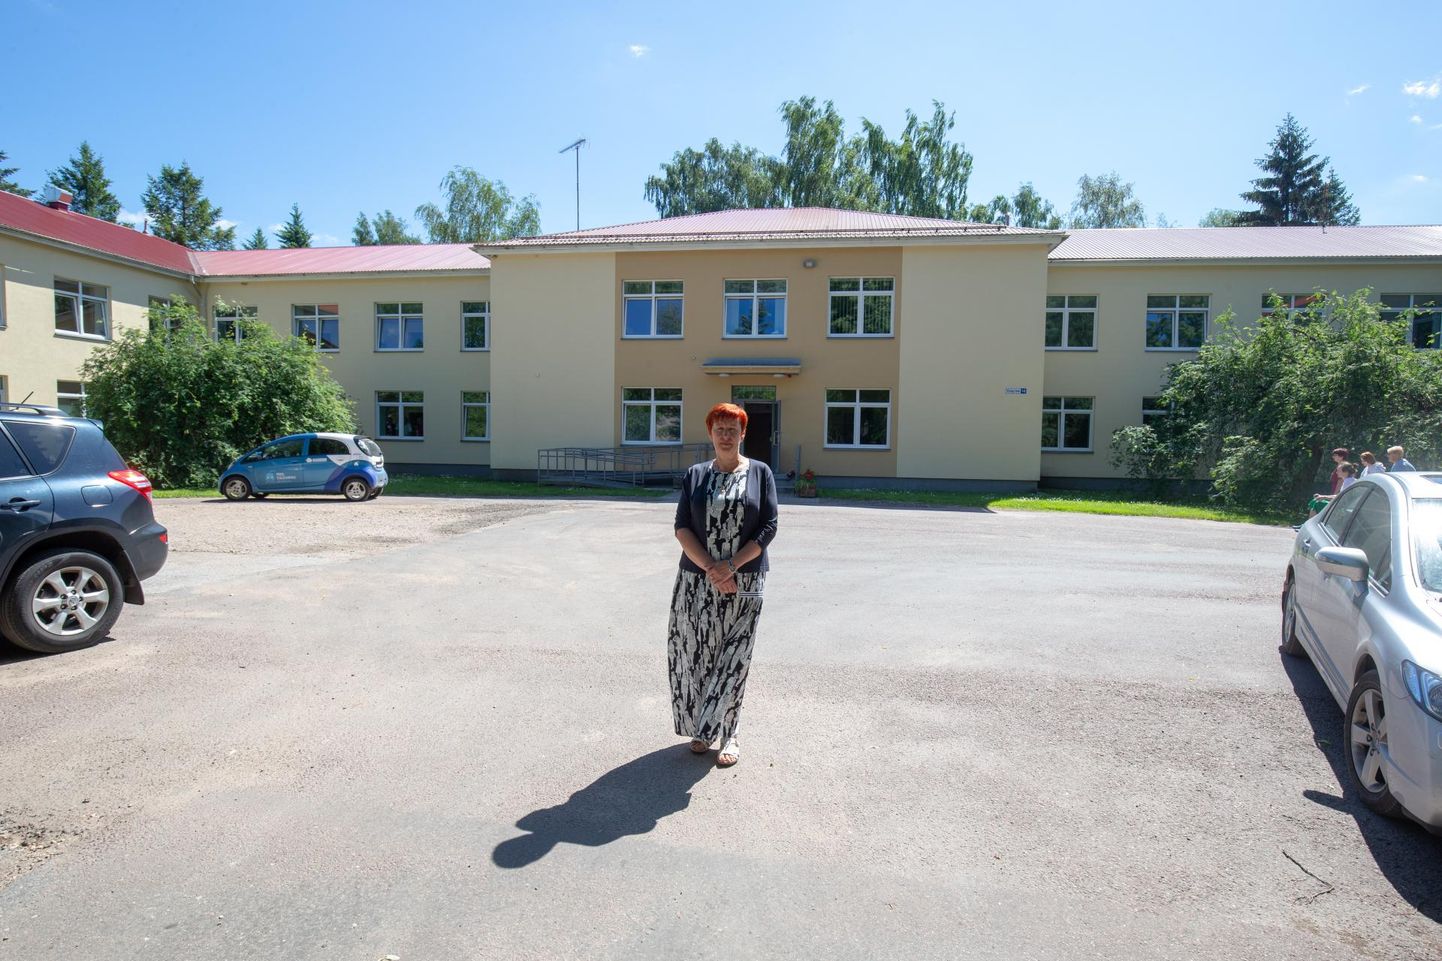 Viljandi haigla sõltuvushaigete ravi- ja rehabilitatsioonikeskus asub Viljandi haigla Jämejala pargi hoonetes. Fotol on keskuse hoone ees selle juhataja Rita Kerdmann.